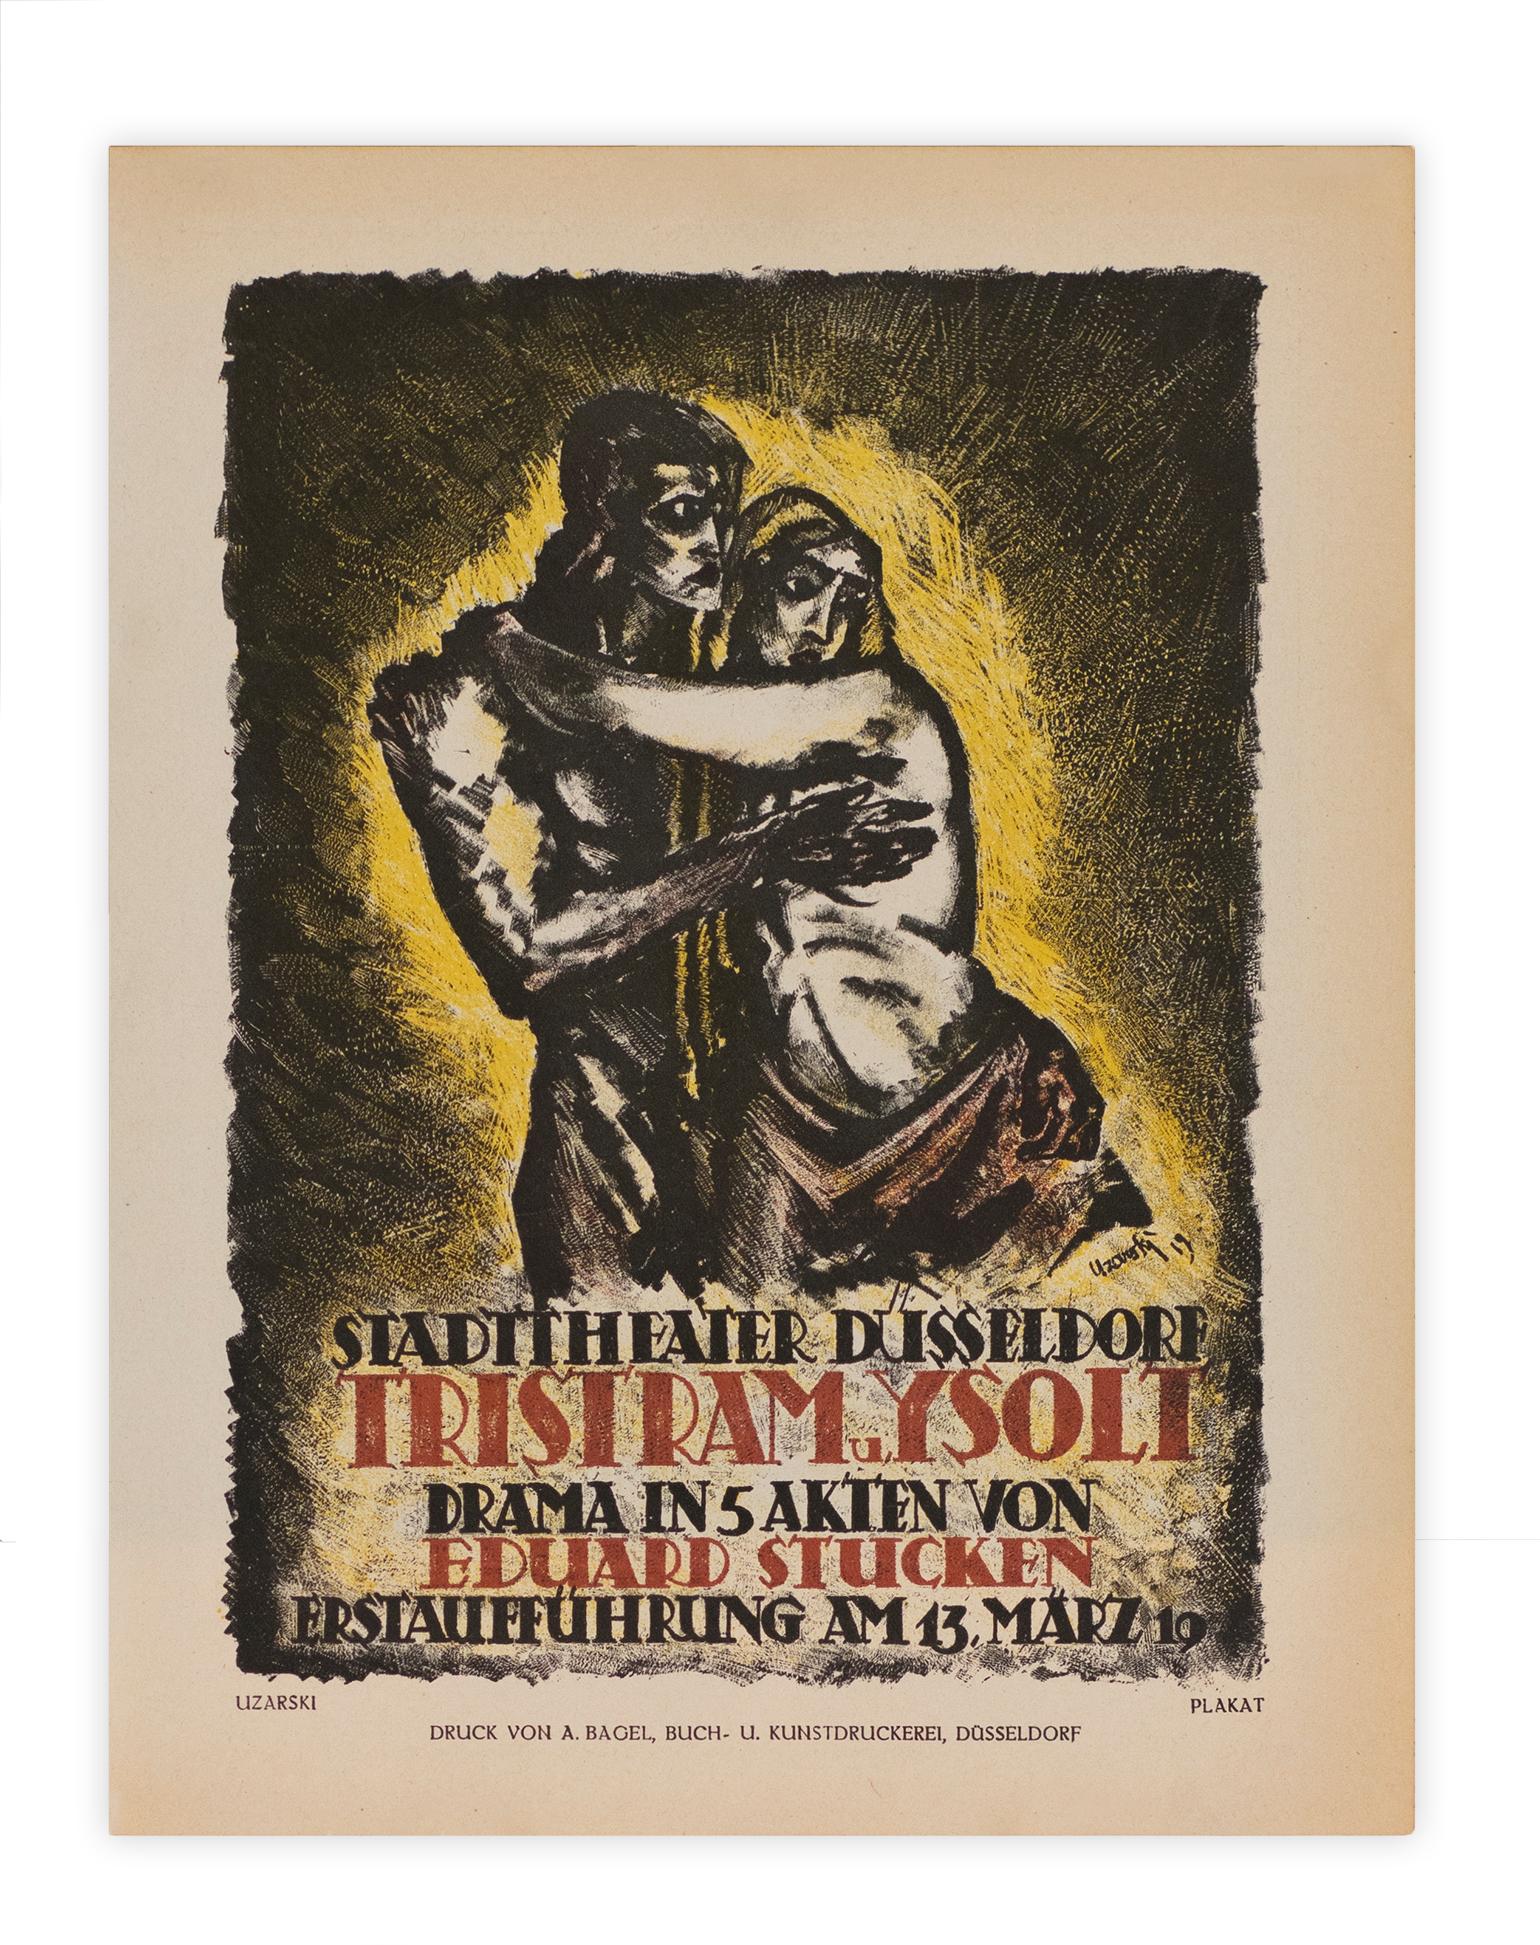 Tristram et Ysoli, Théâtre d'État de Dsseldorf, lithographie de scène expressionniste - Print de Adolf Uzarski